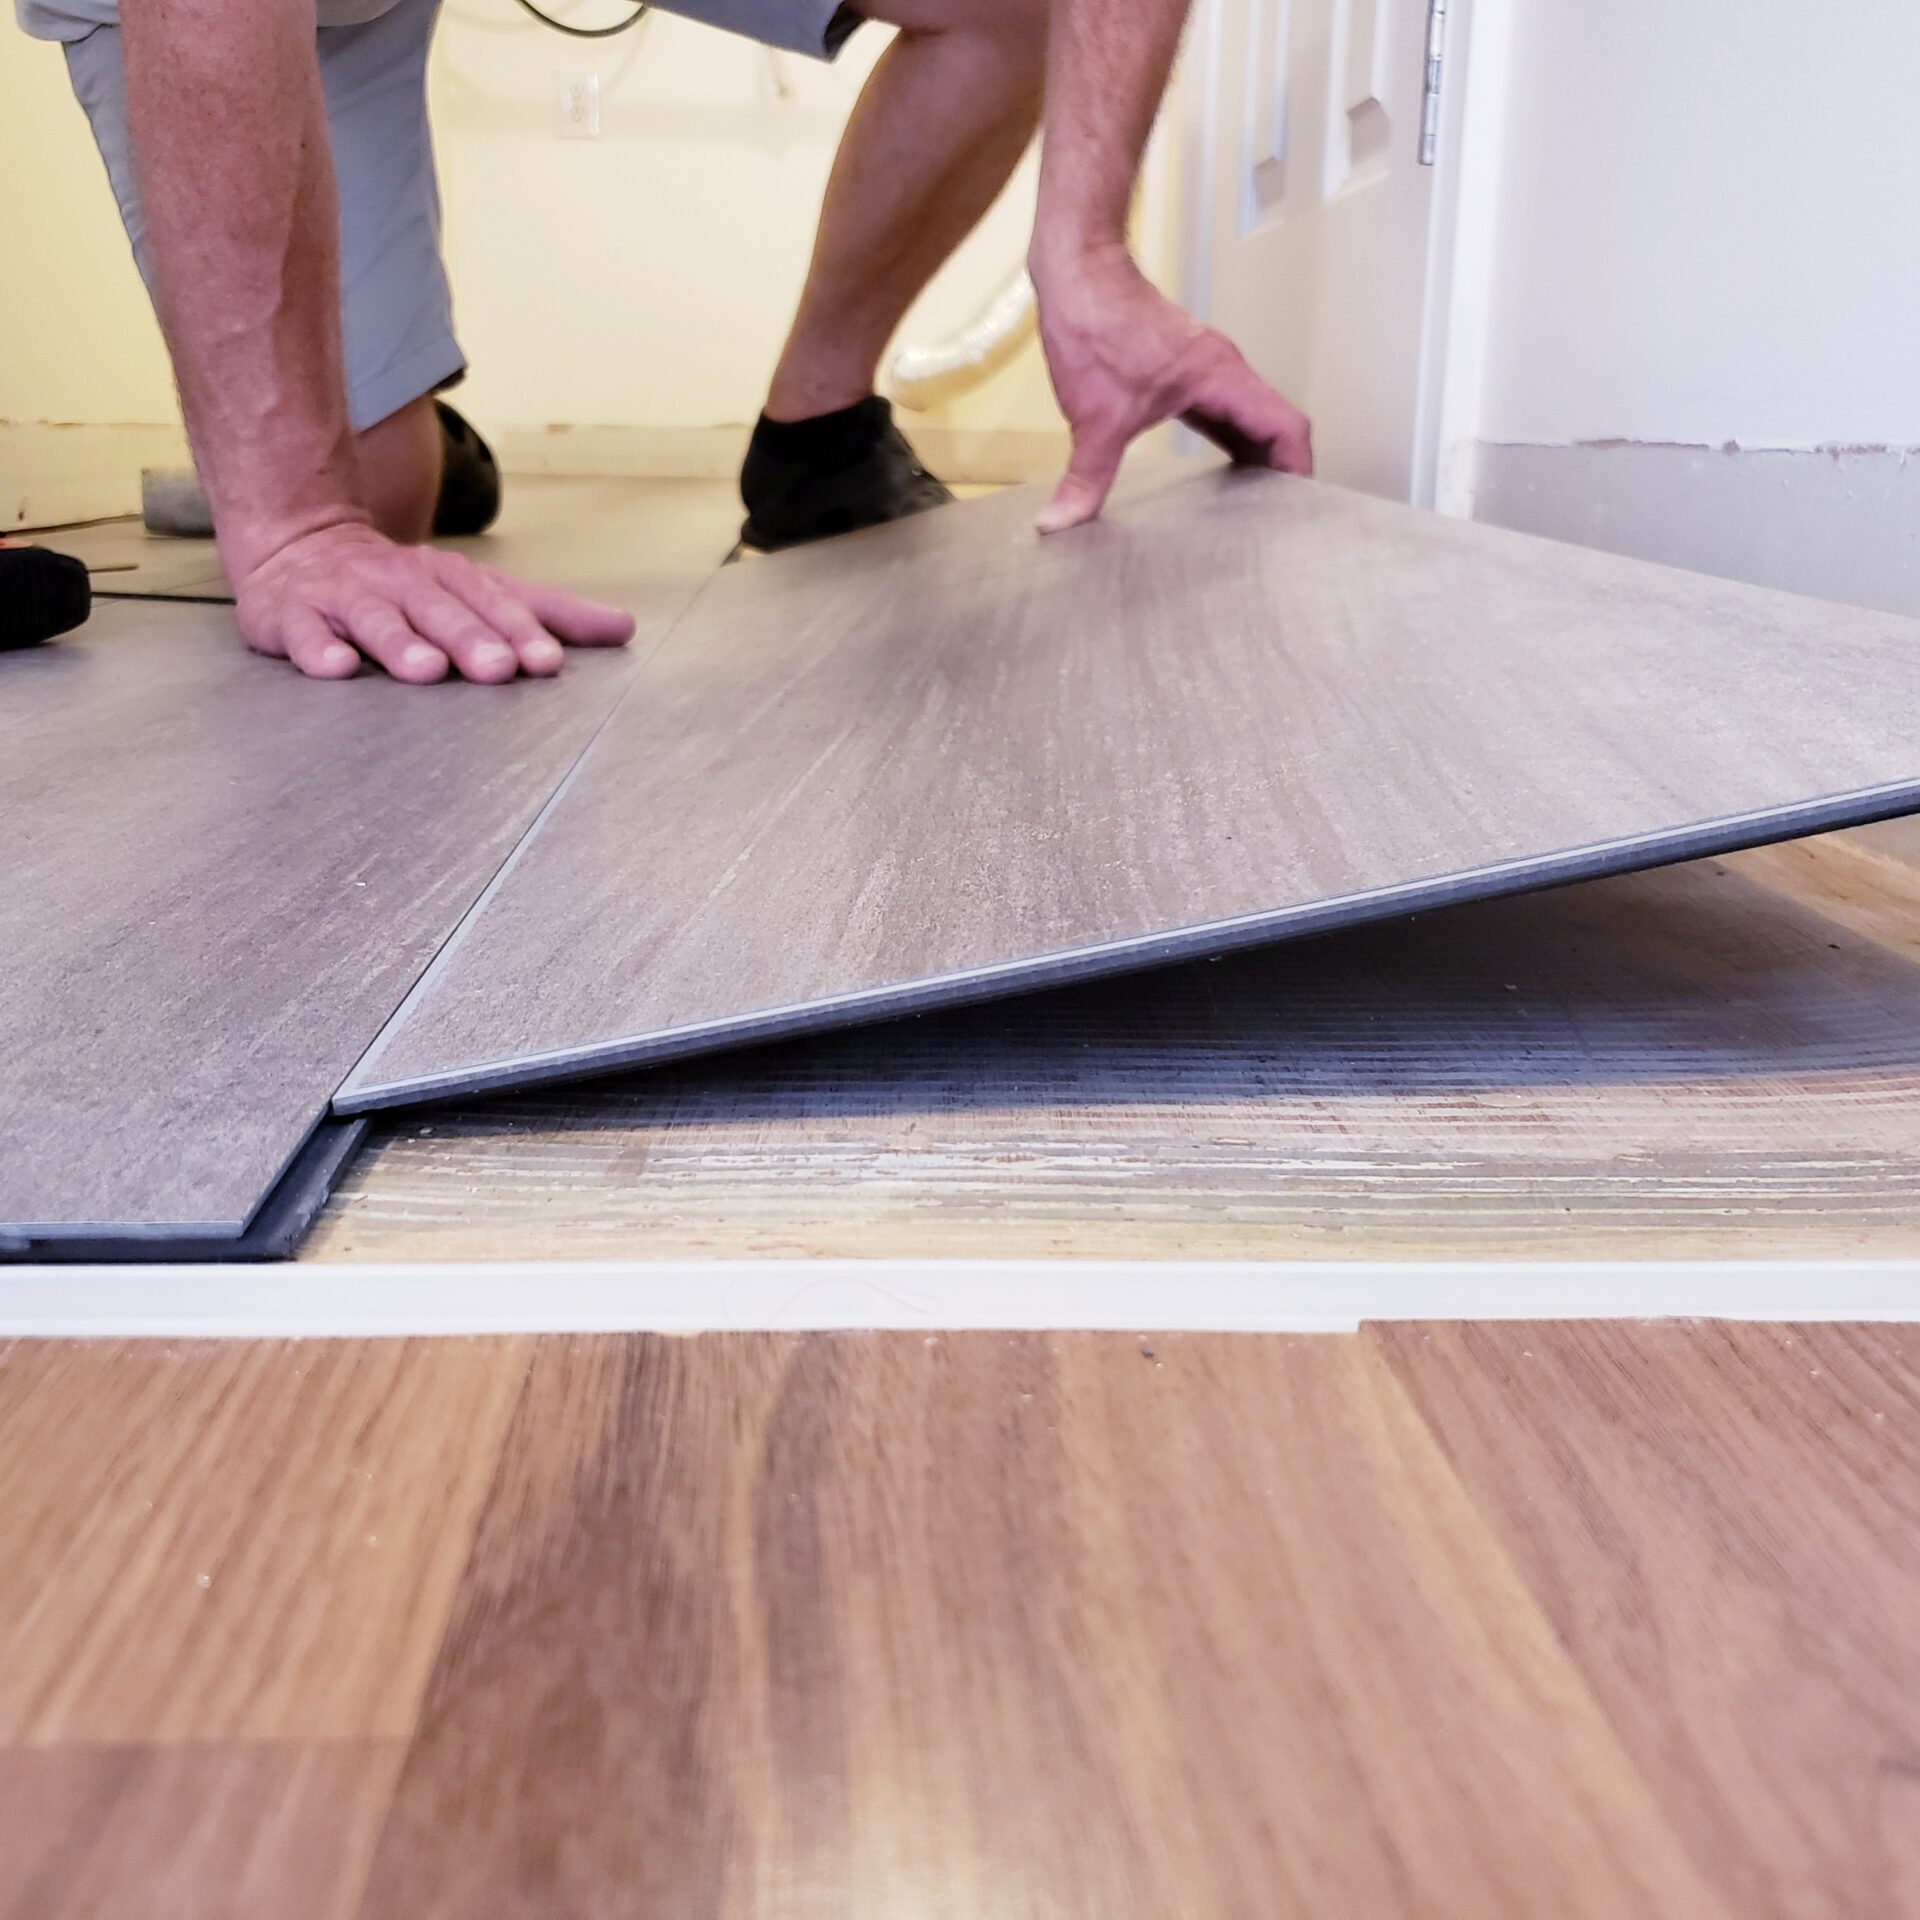 floor-level-view-of-laminate-flooring-installation-2023-11-27-04-51-13-utc